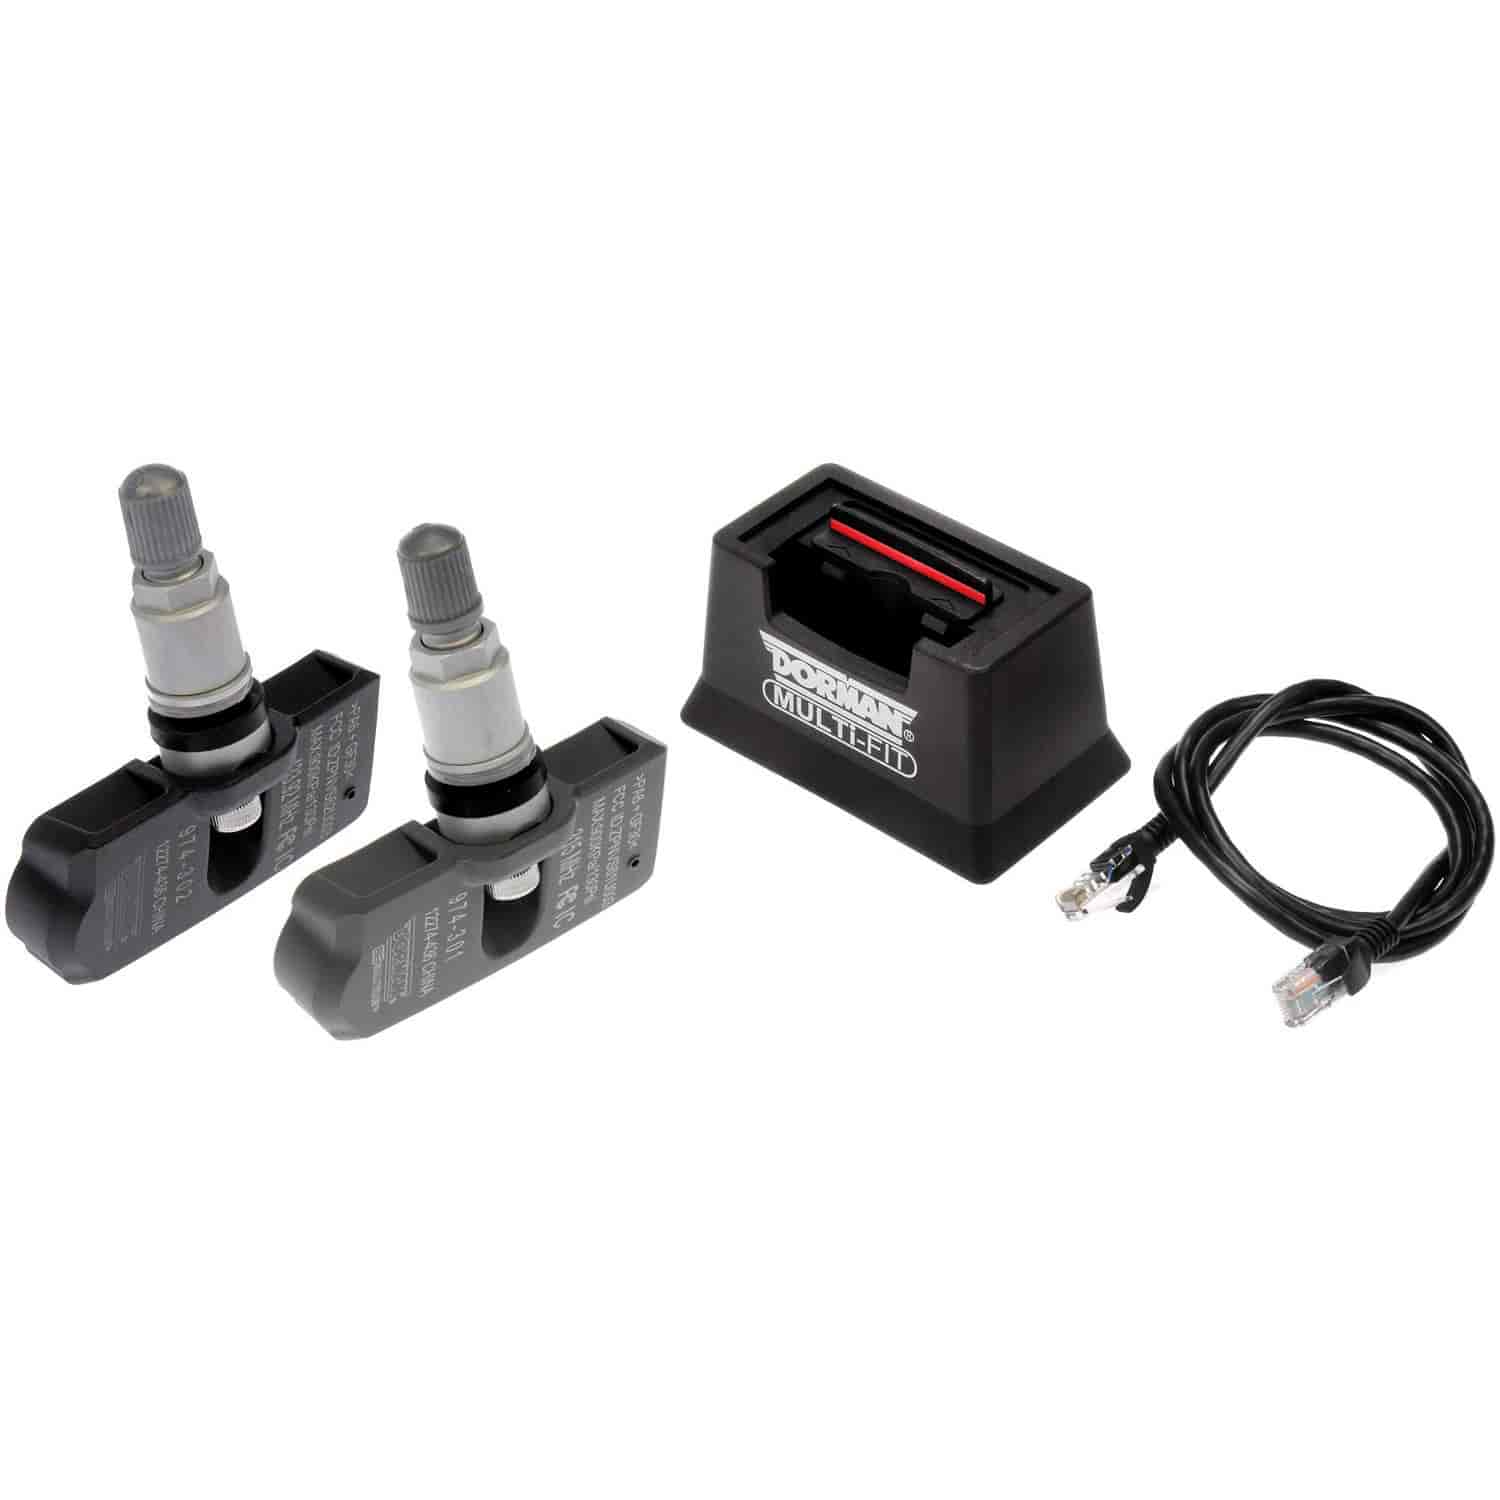 Starter Kit 1 MULTi-FIT ATEQ VT55 Link Box and MULTi-FIT Sensors 8-315 4-433